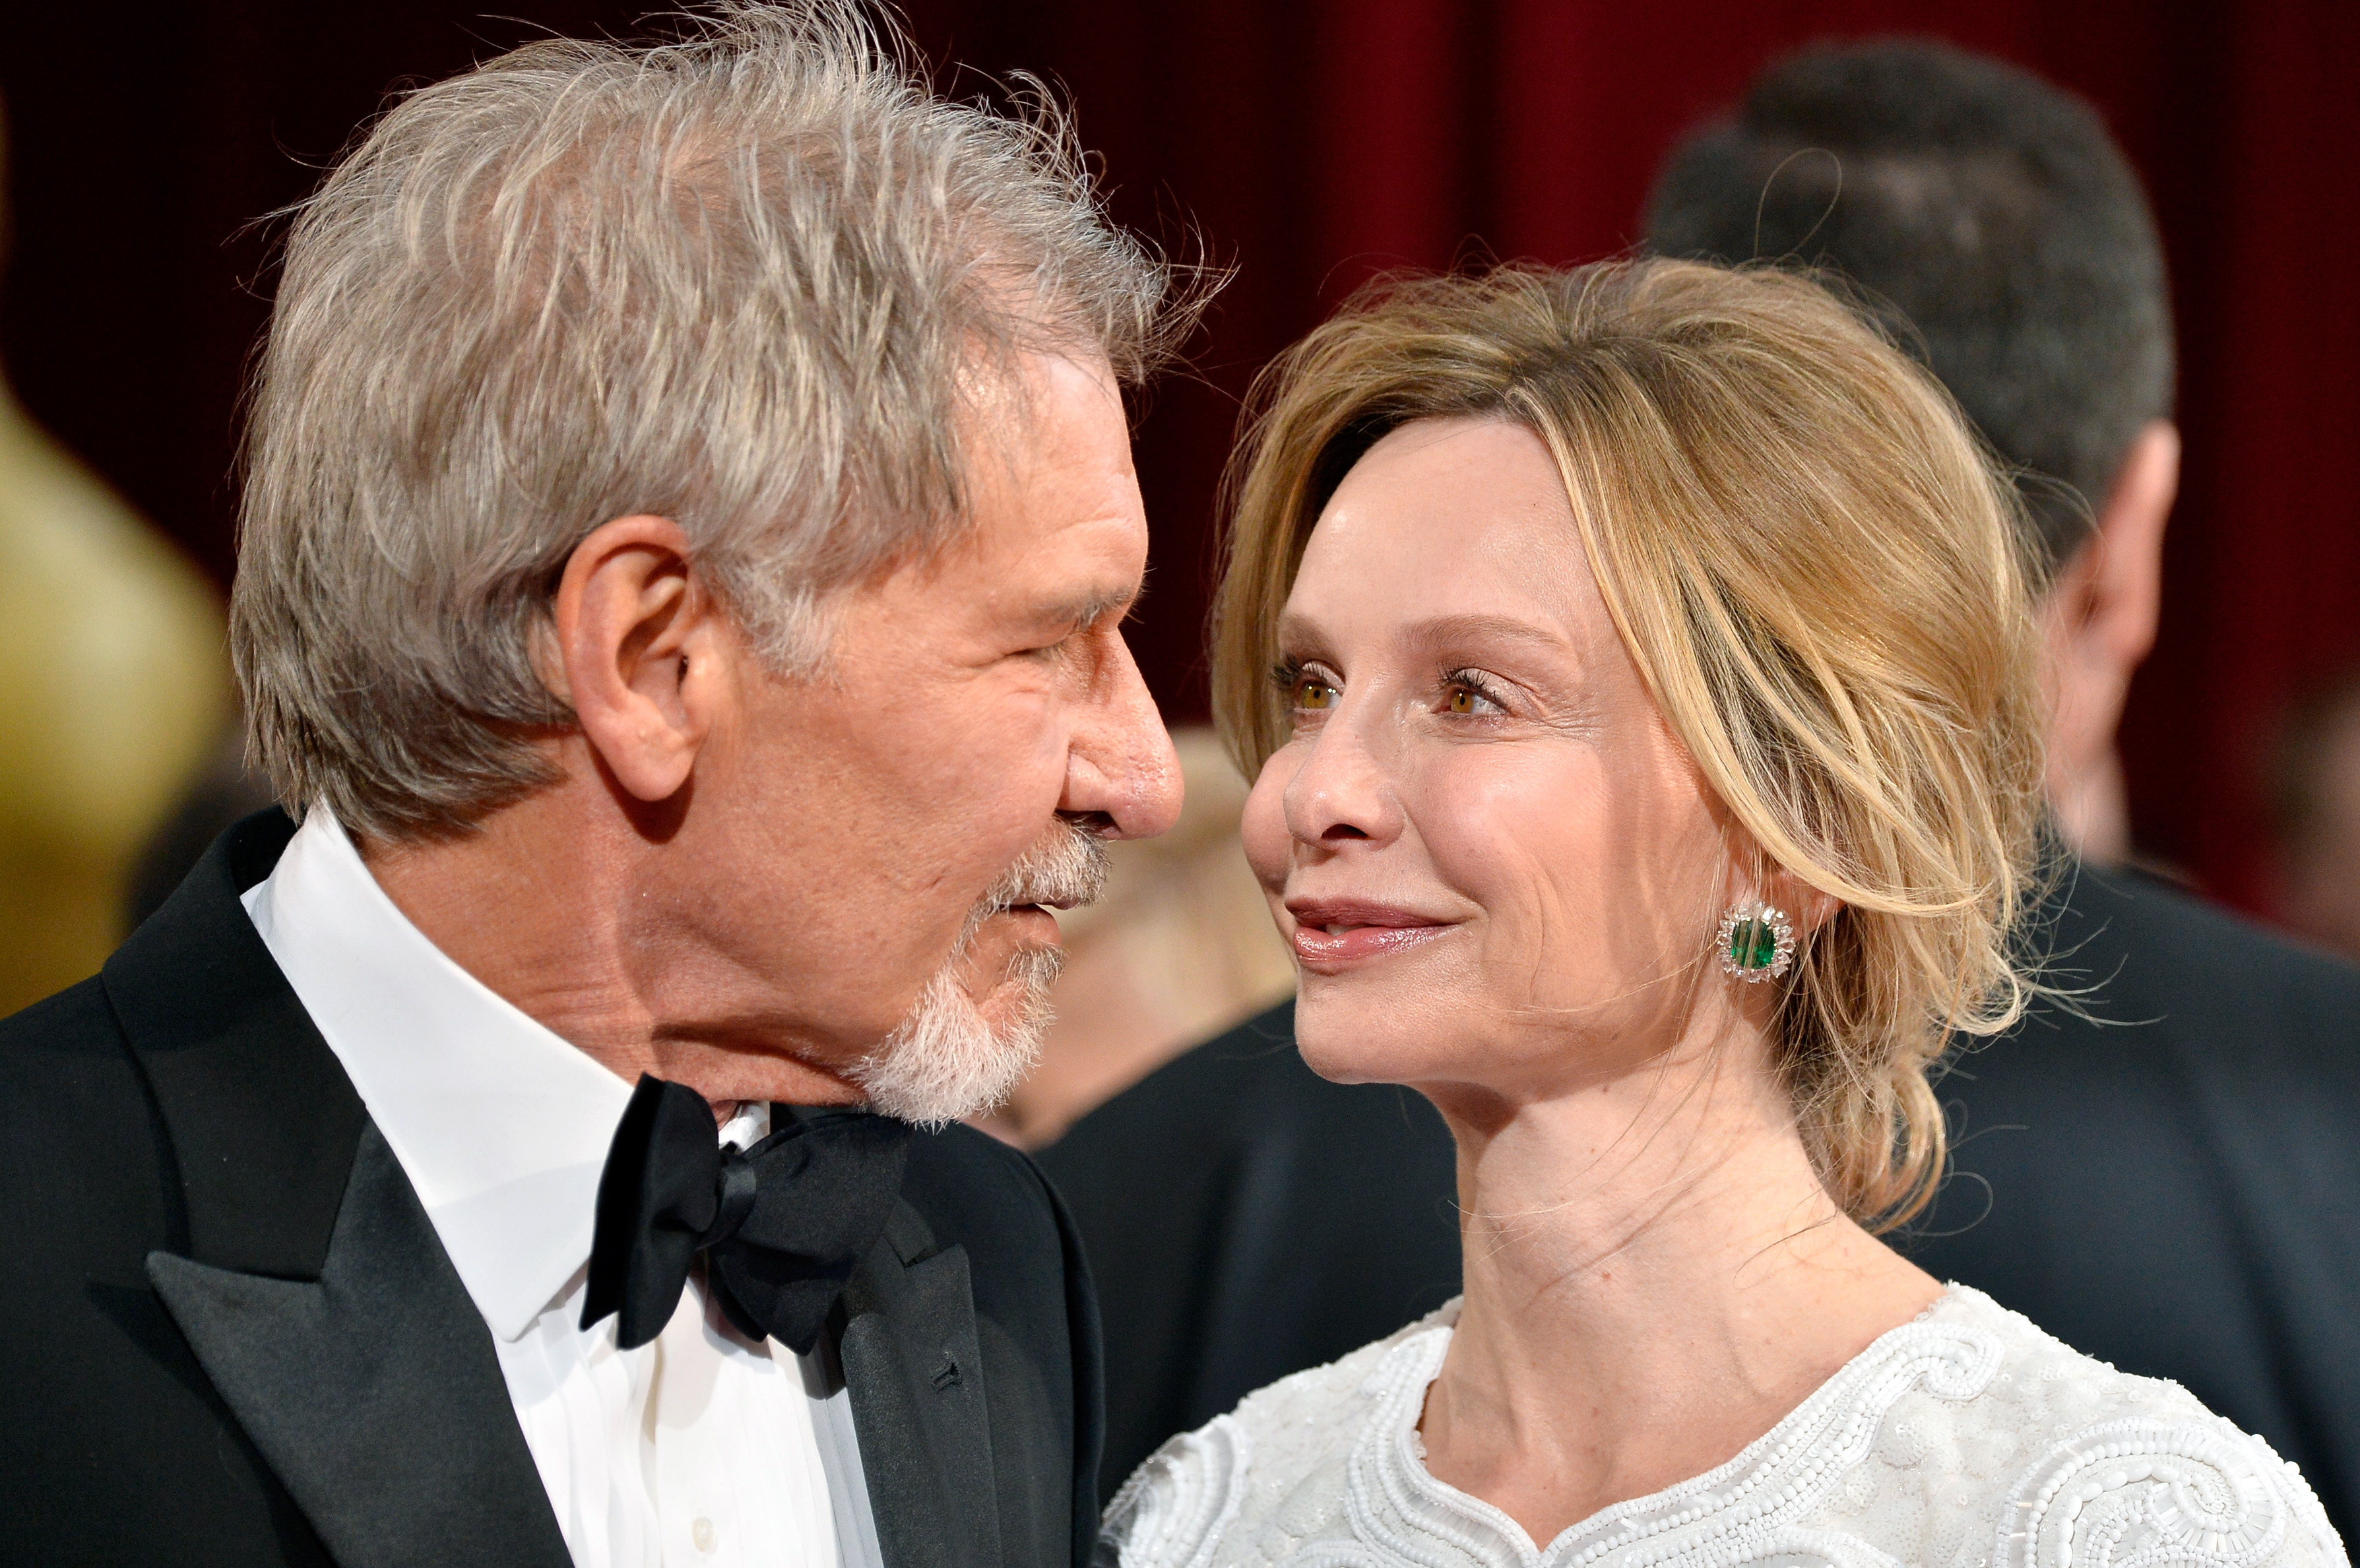 Harrison Ford y Calista Flockhart en los Oscar el 2 de marzo de 2014, en Hollywood, California | Foto: Getty Images